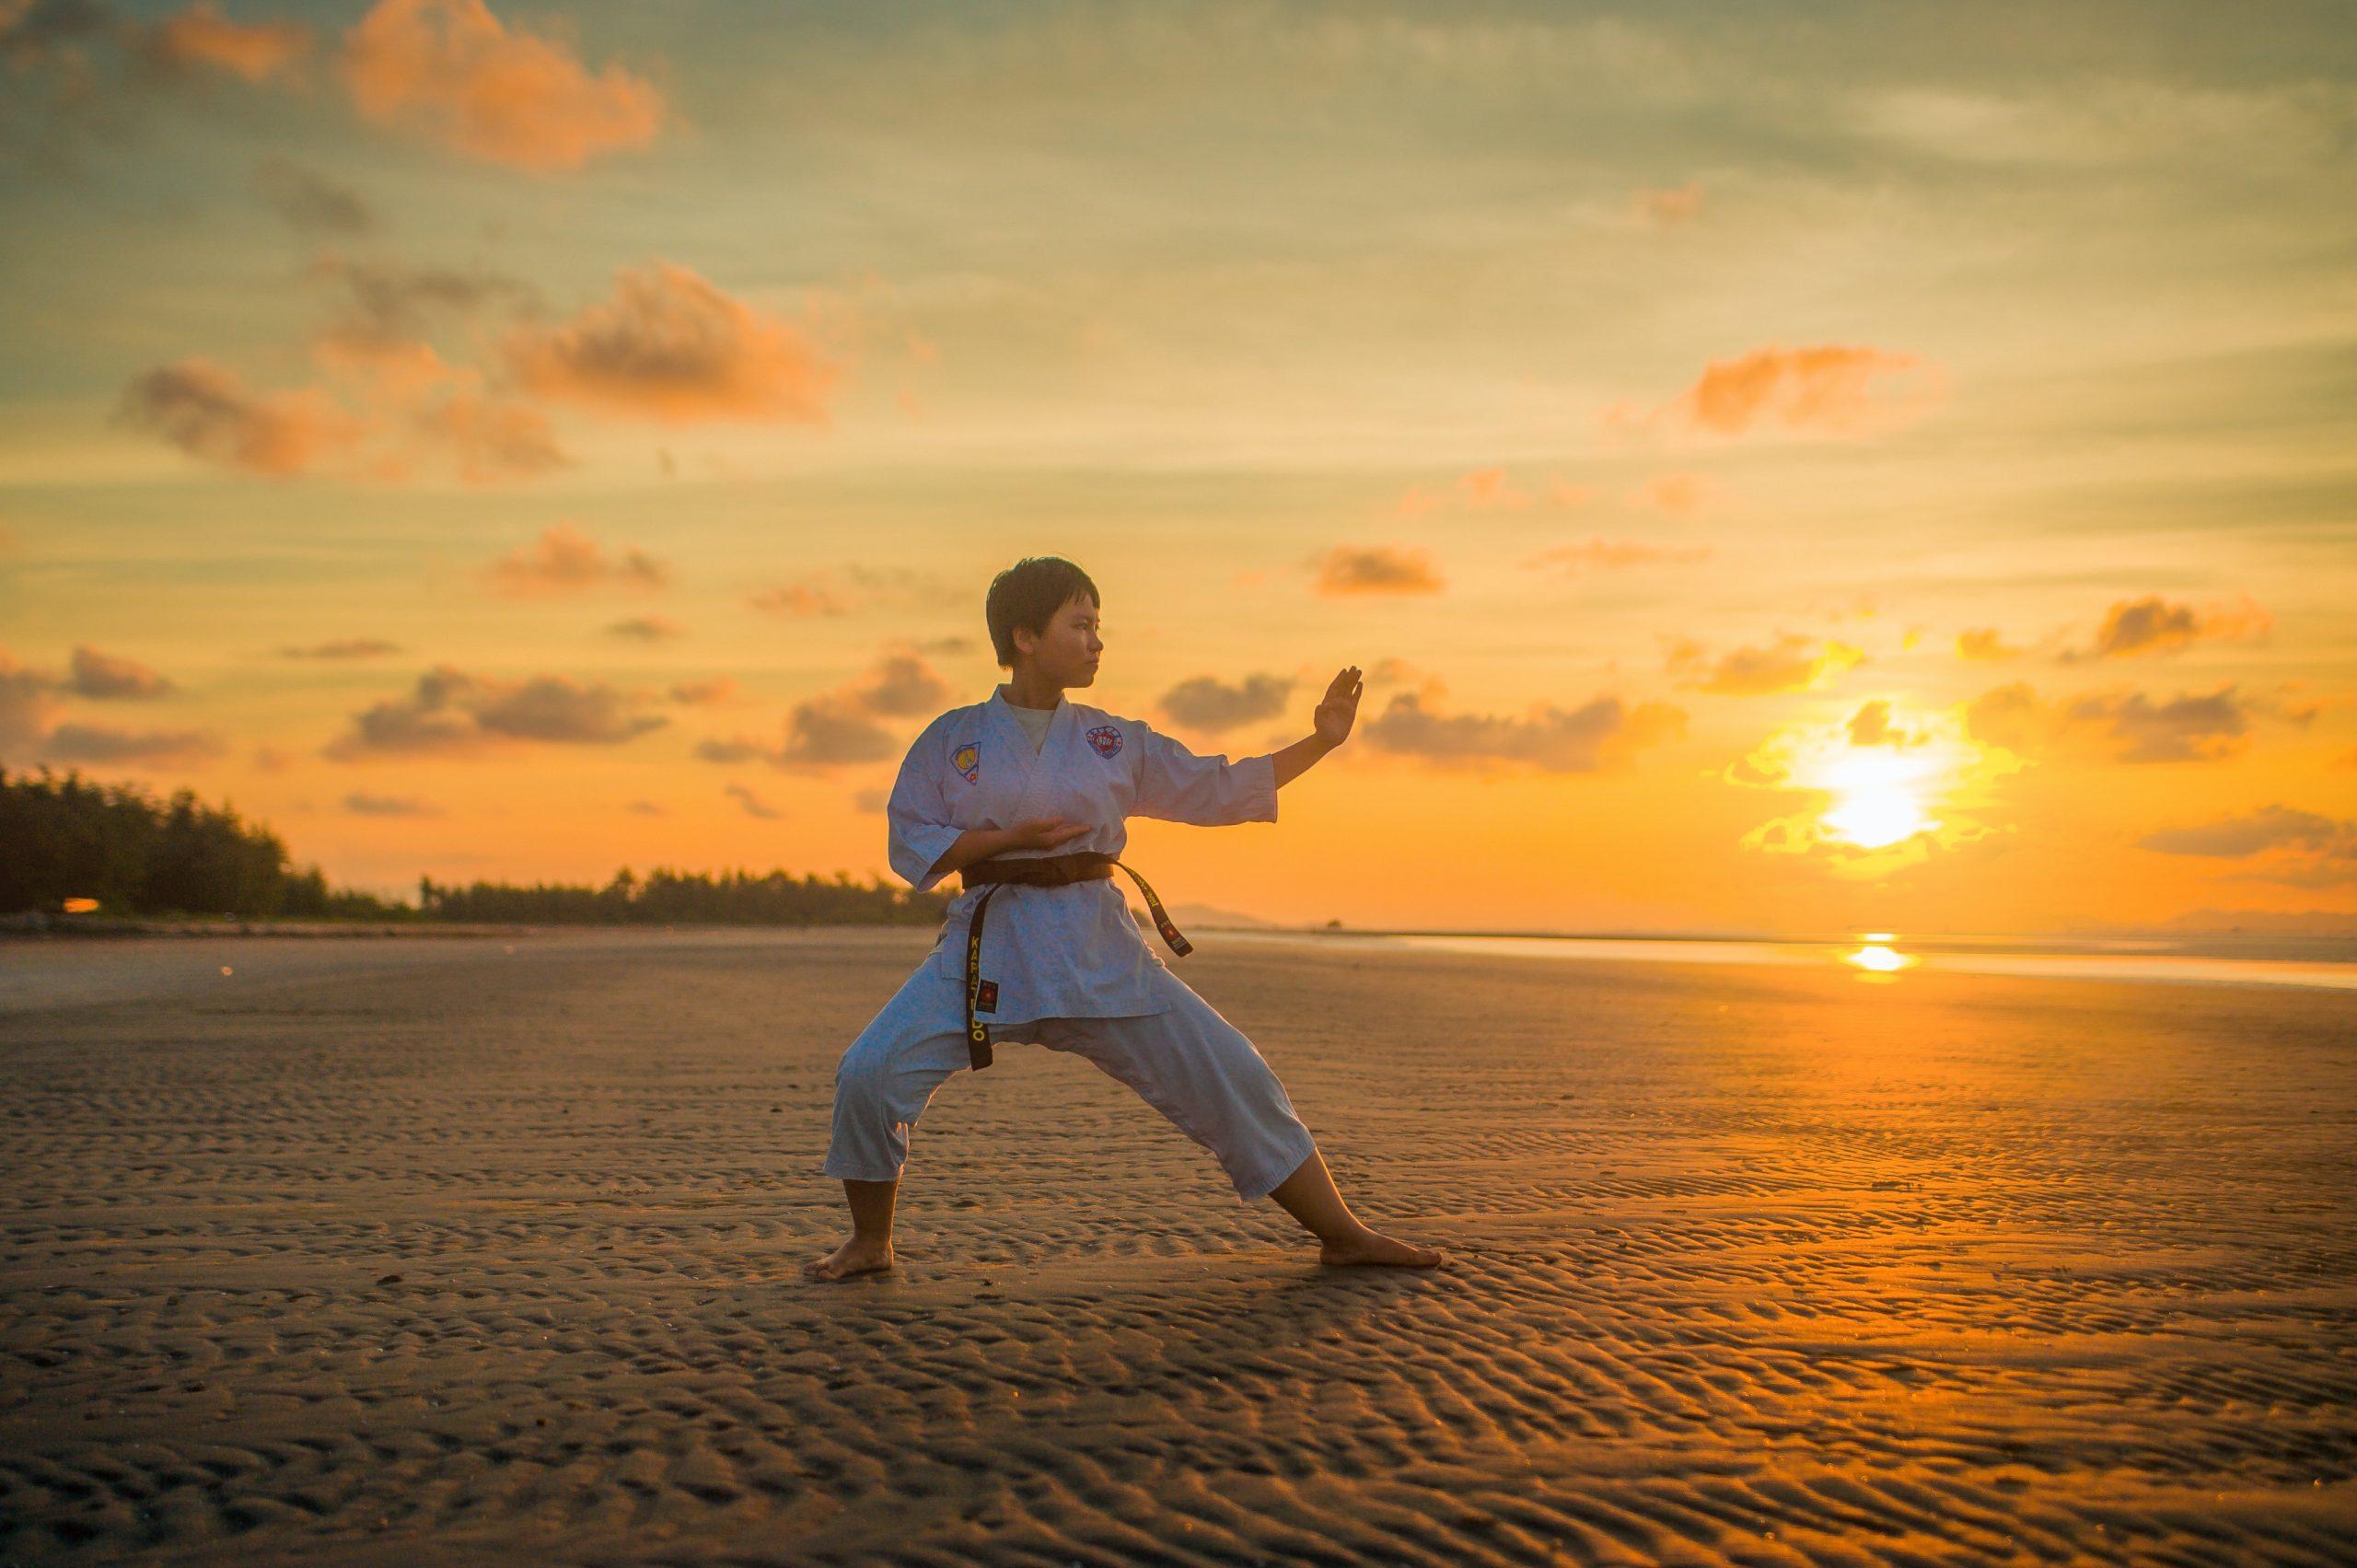 Luyện tập karate có thể cải thiện sức khỏe tim mạch cũng như giảm huyết áp do tập trung vào các kỹ thuật giảm căng thẳng. (Nguồn: Internet)